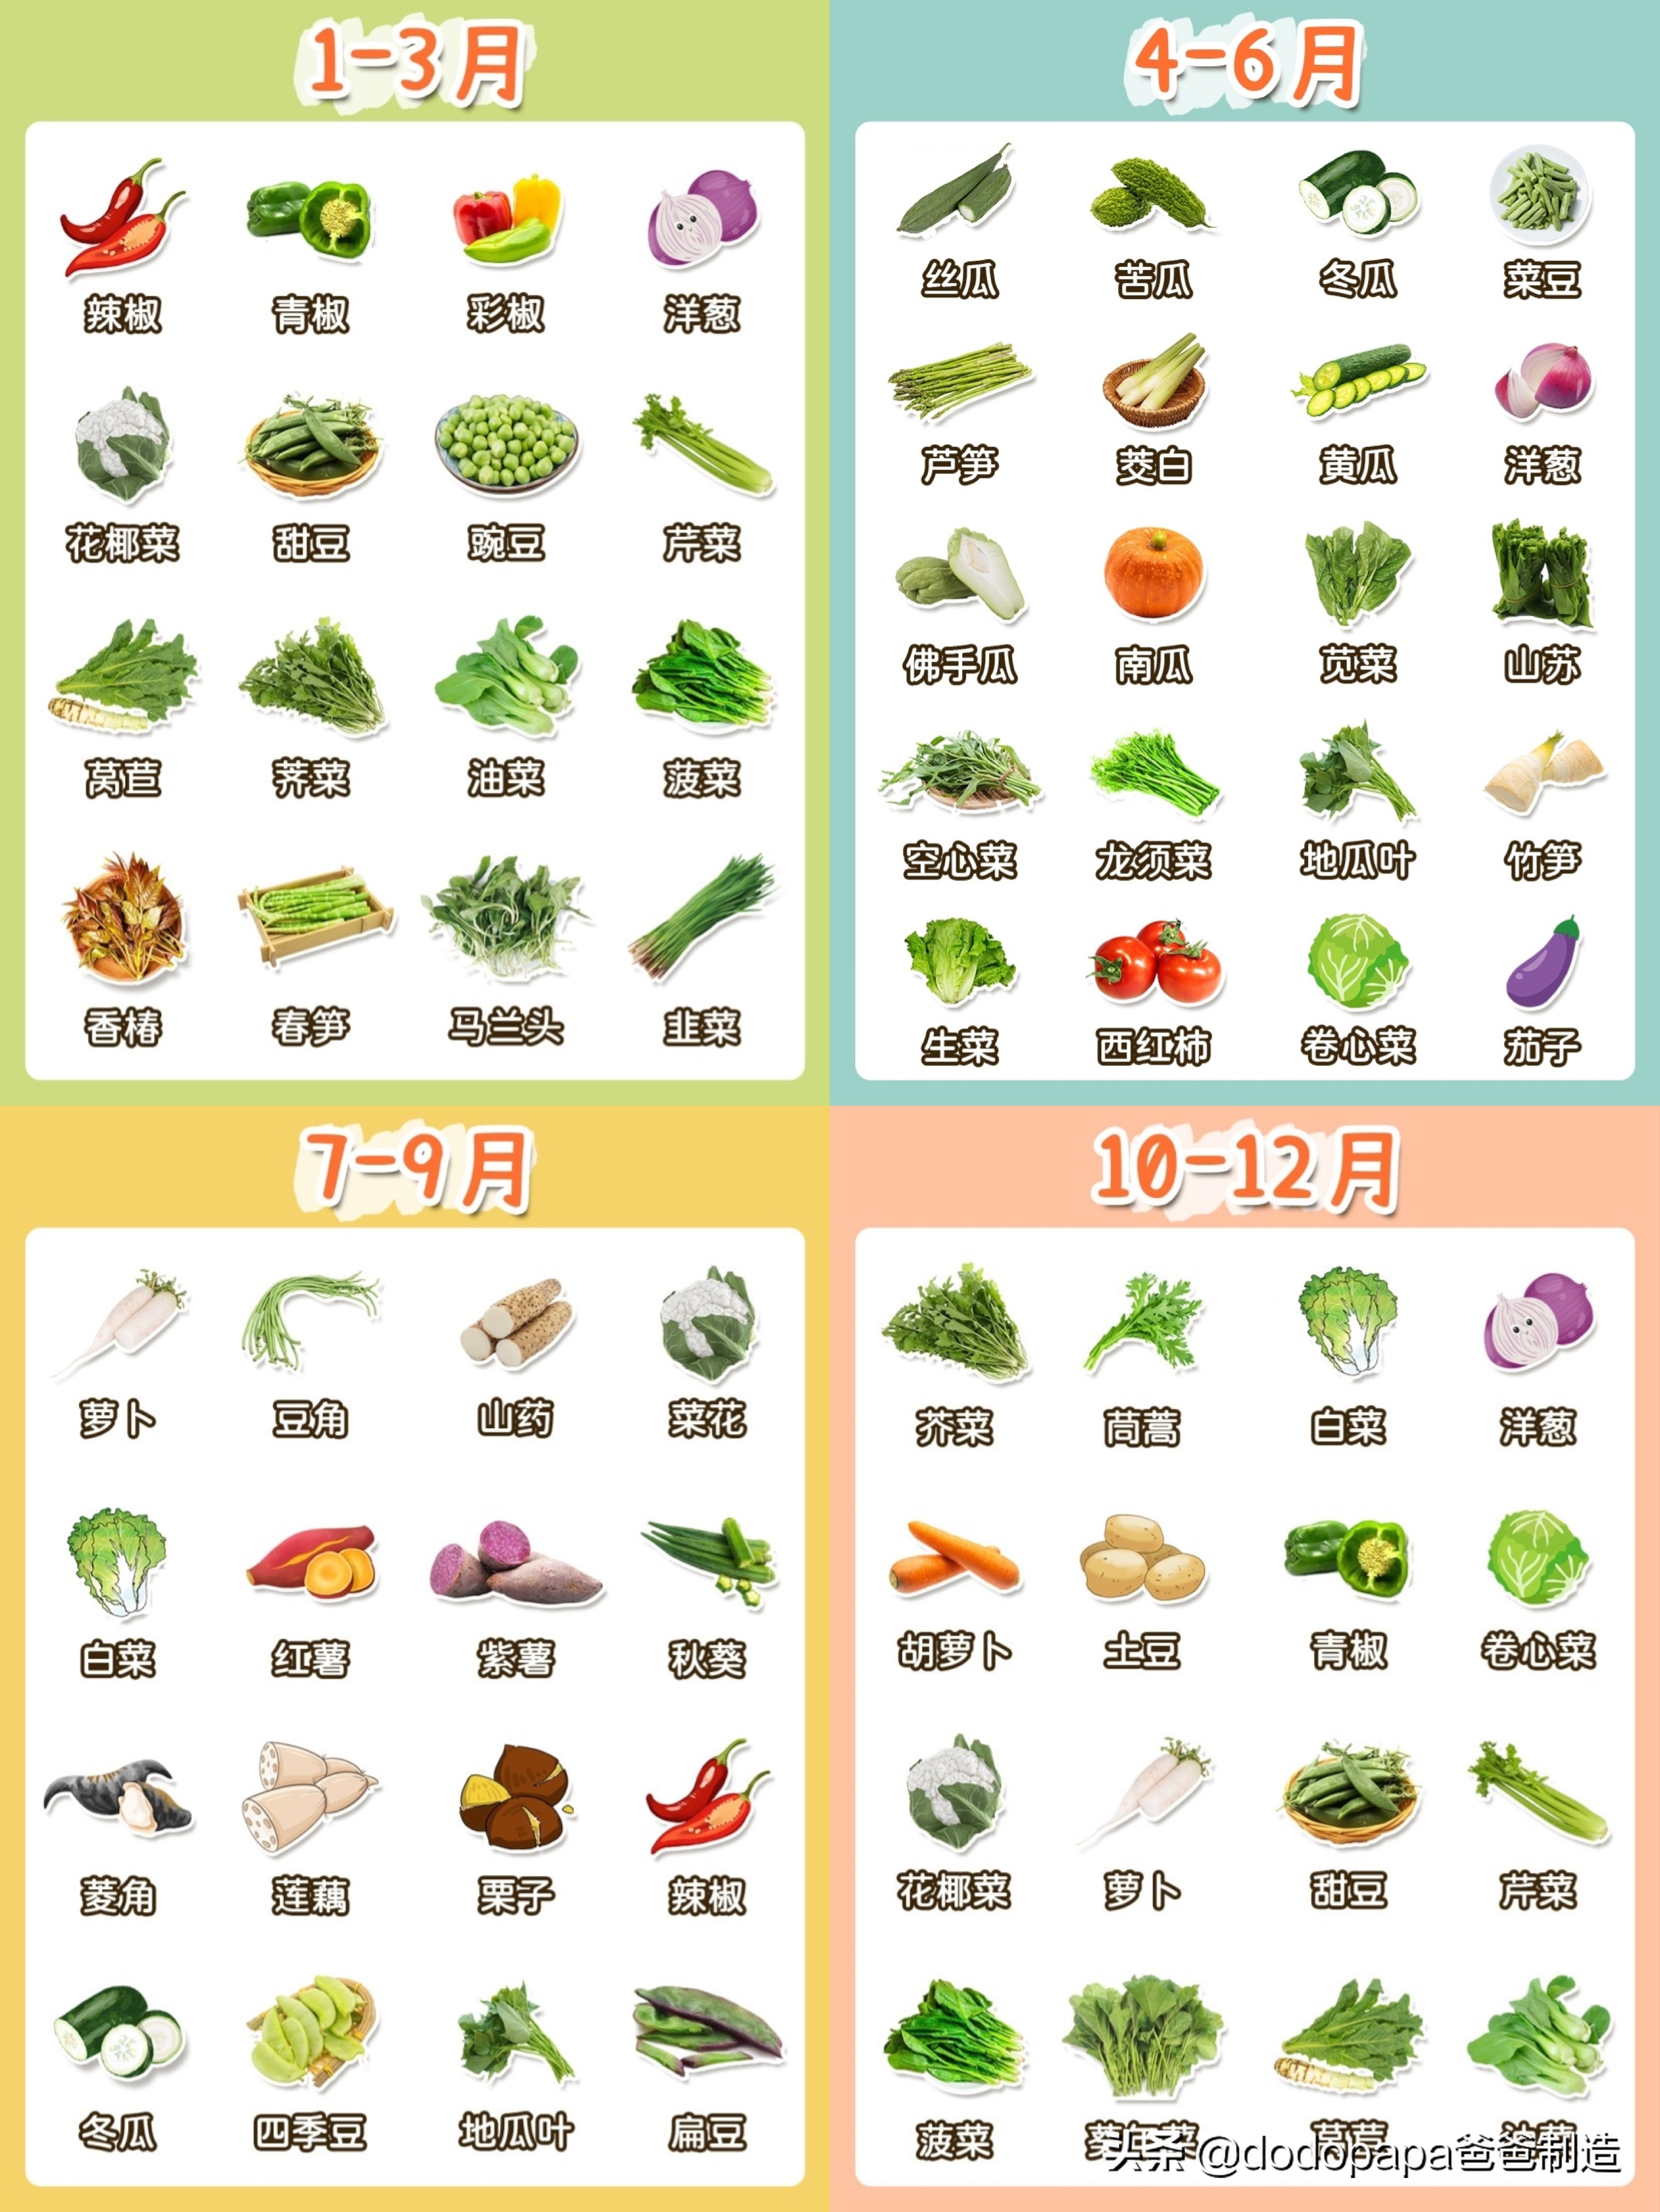 辅食有哪些种类,宝宝辅食蔬菜泥如何添加？附上时令蔬菜月份速查表格给大家